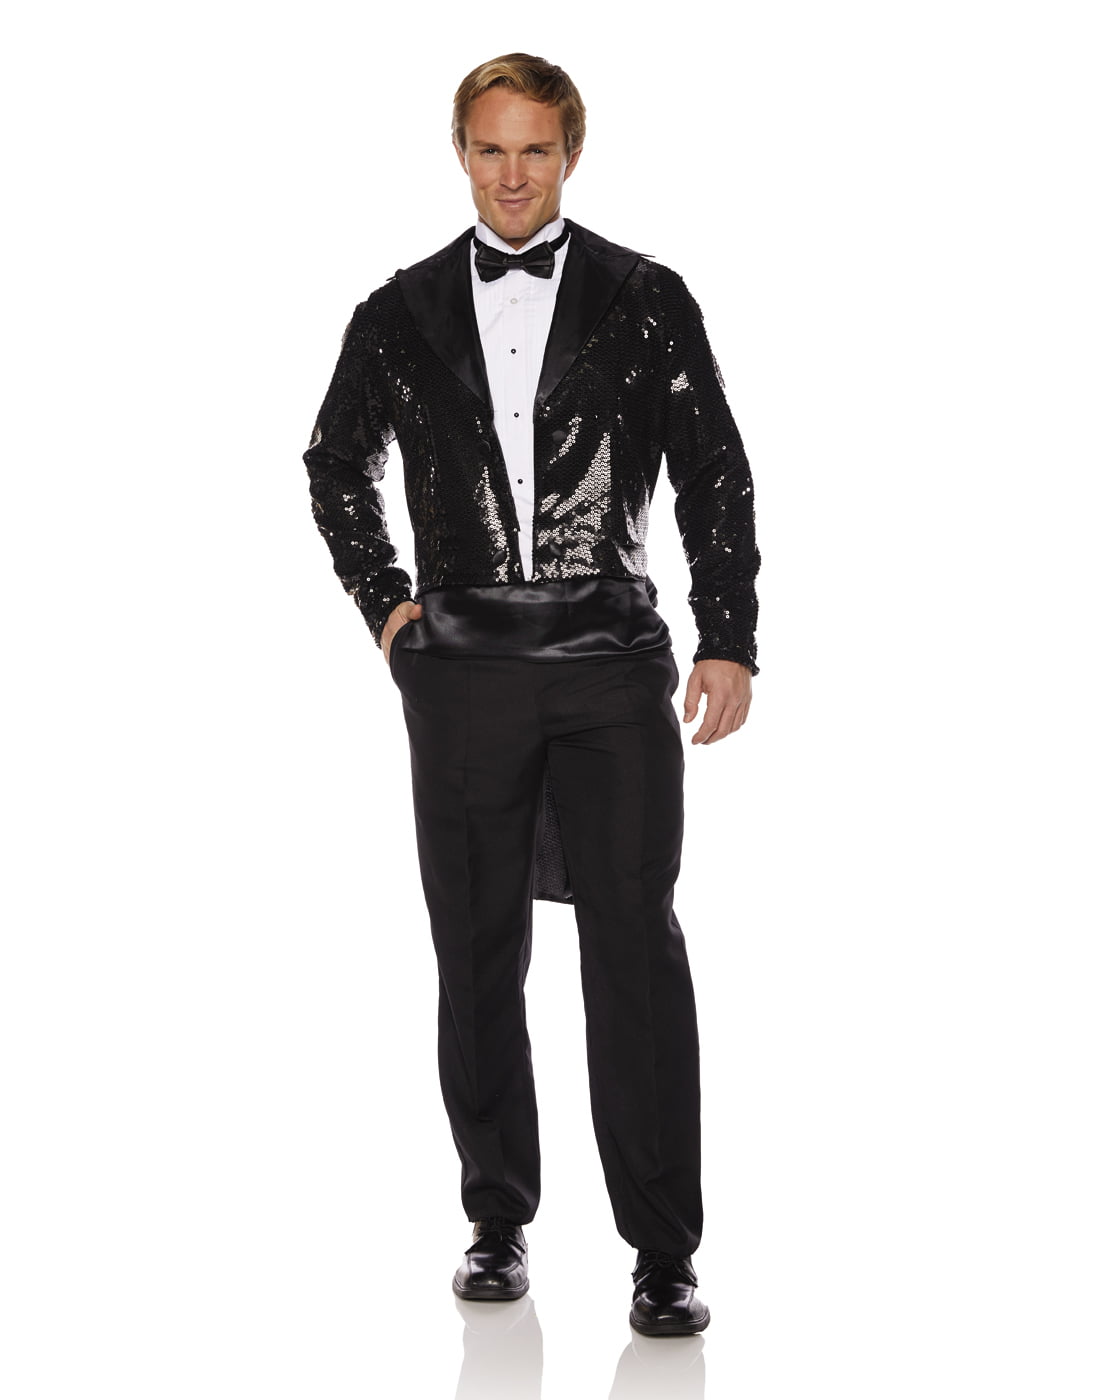 Black Sequin with Coat Tail Men's Adult Halloween Costume - Walmart.com